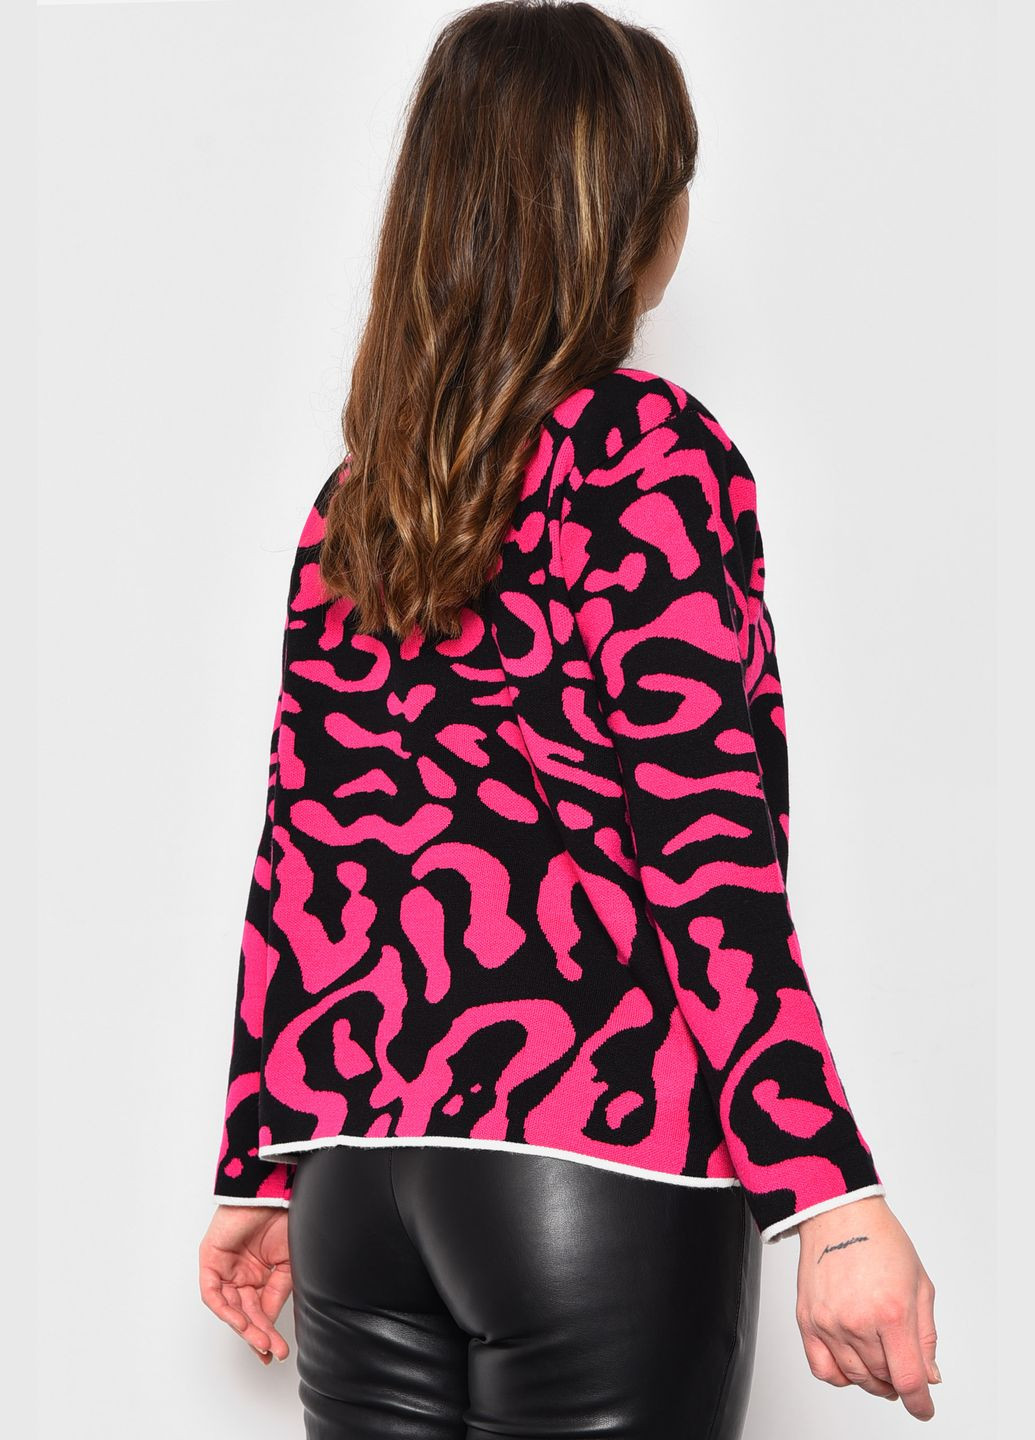 Черный зимний свитер женский с принтом черно-розового цвета пуловер Let's Shop